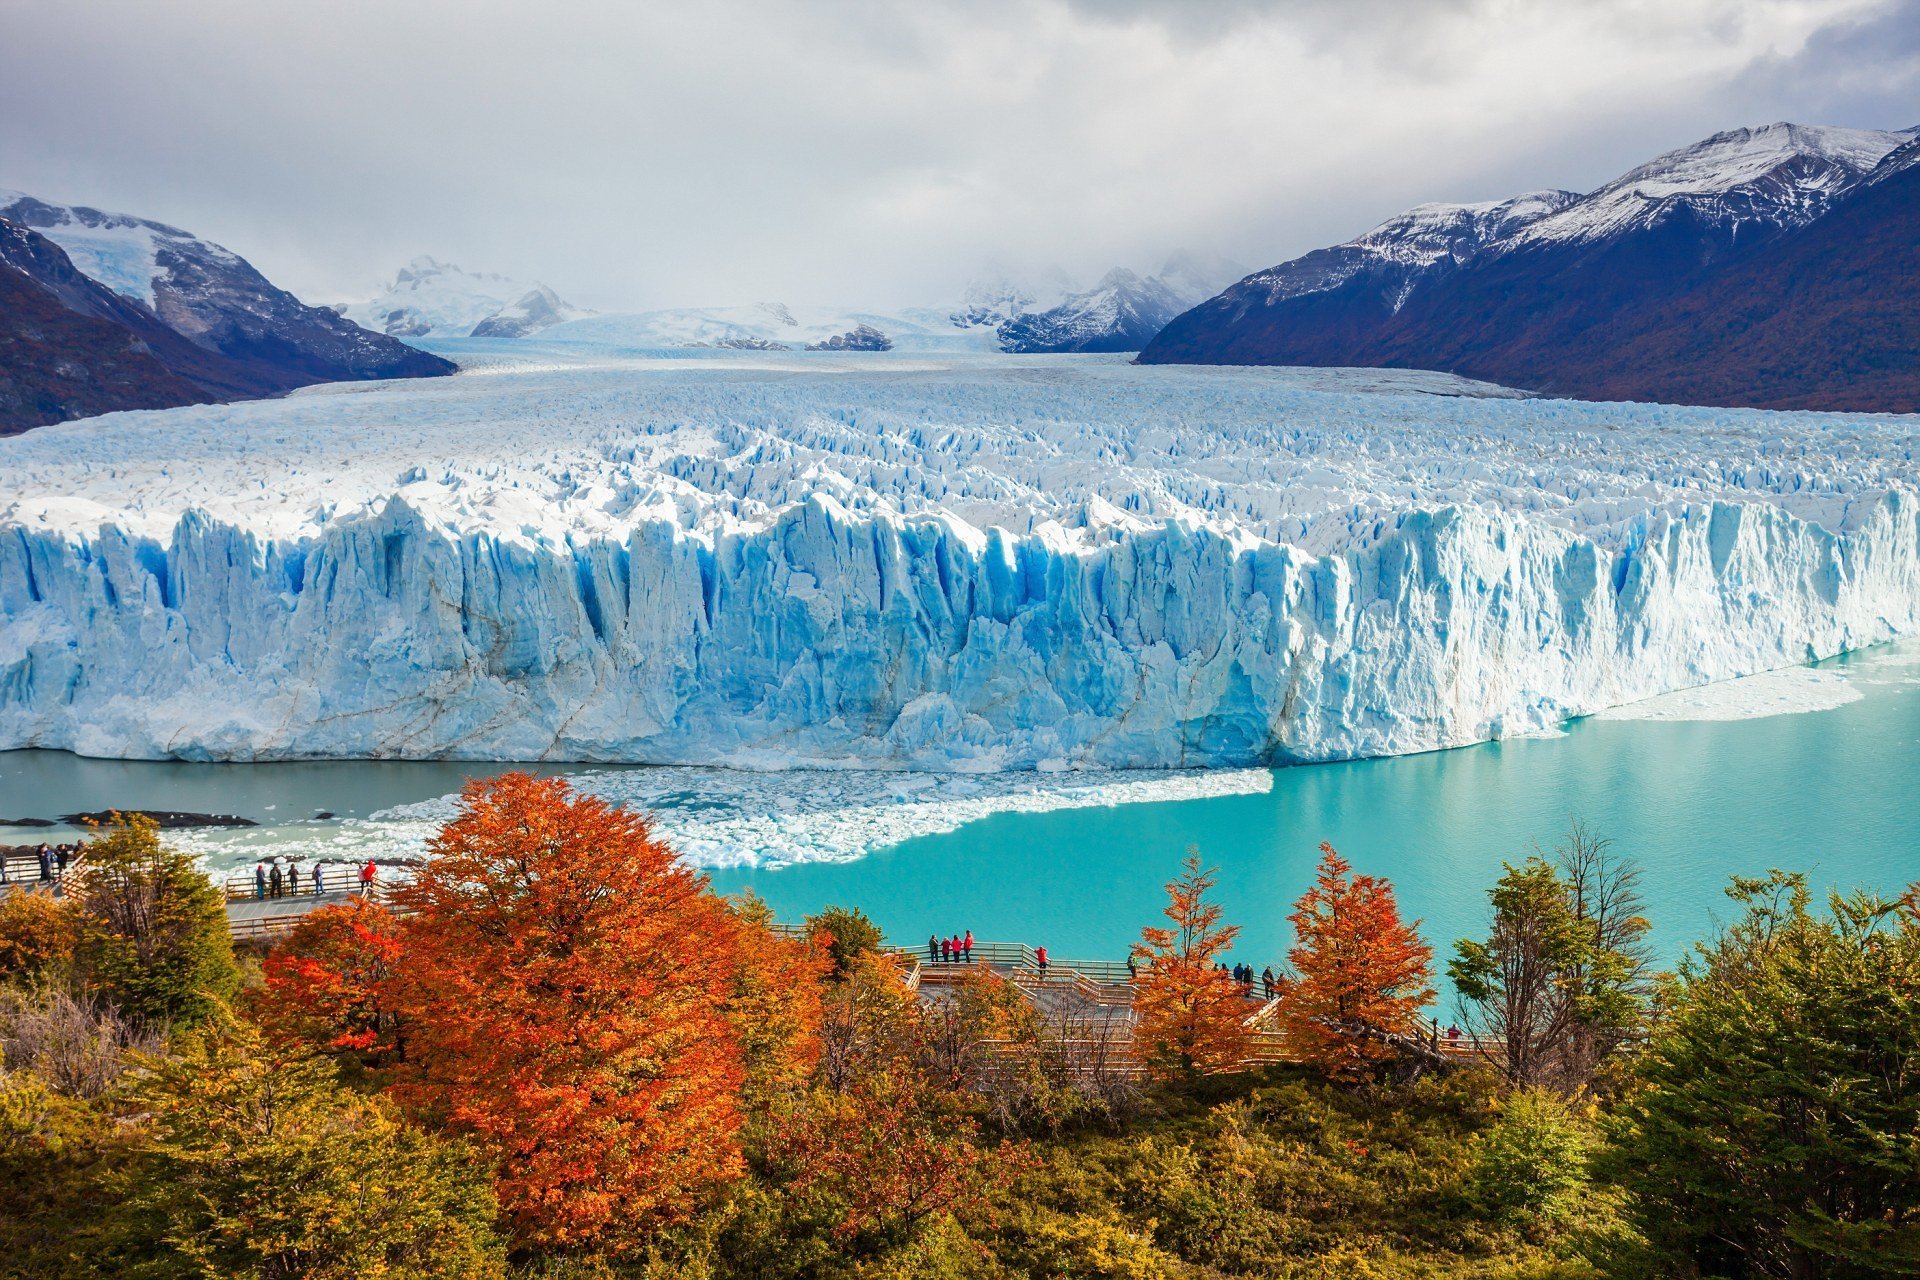 Ледник Перито-Морено расположен в национальном парке Лос-Гласьярес в провинции Санта-Крус, Аргентина. Это одна из самых важных достопримечательностей Аргентинской Патагонии